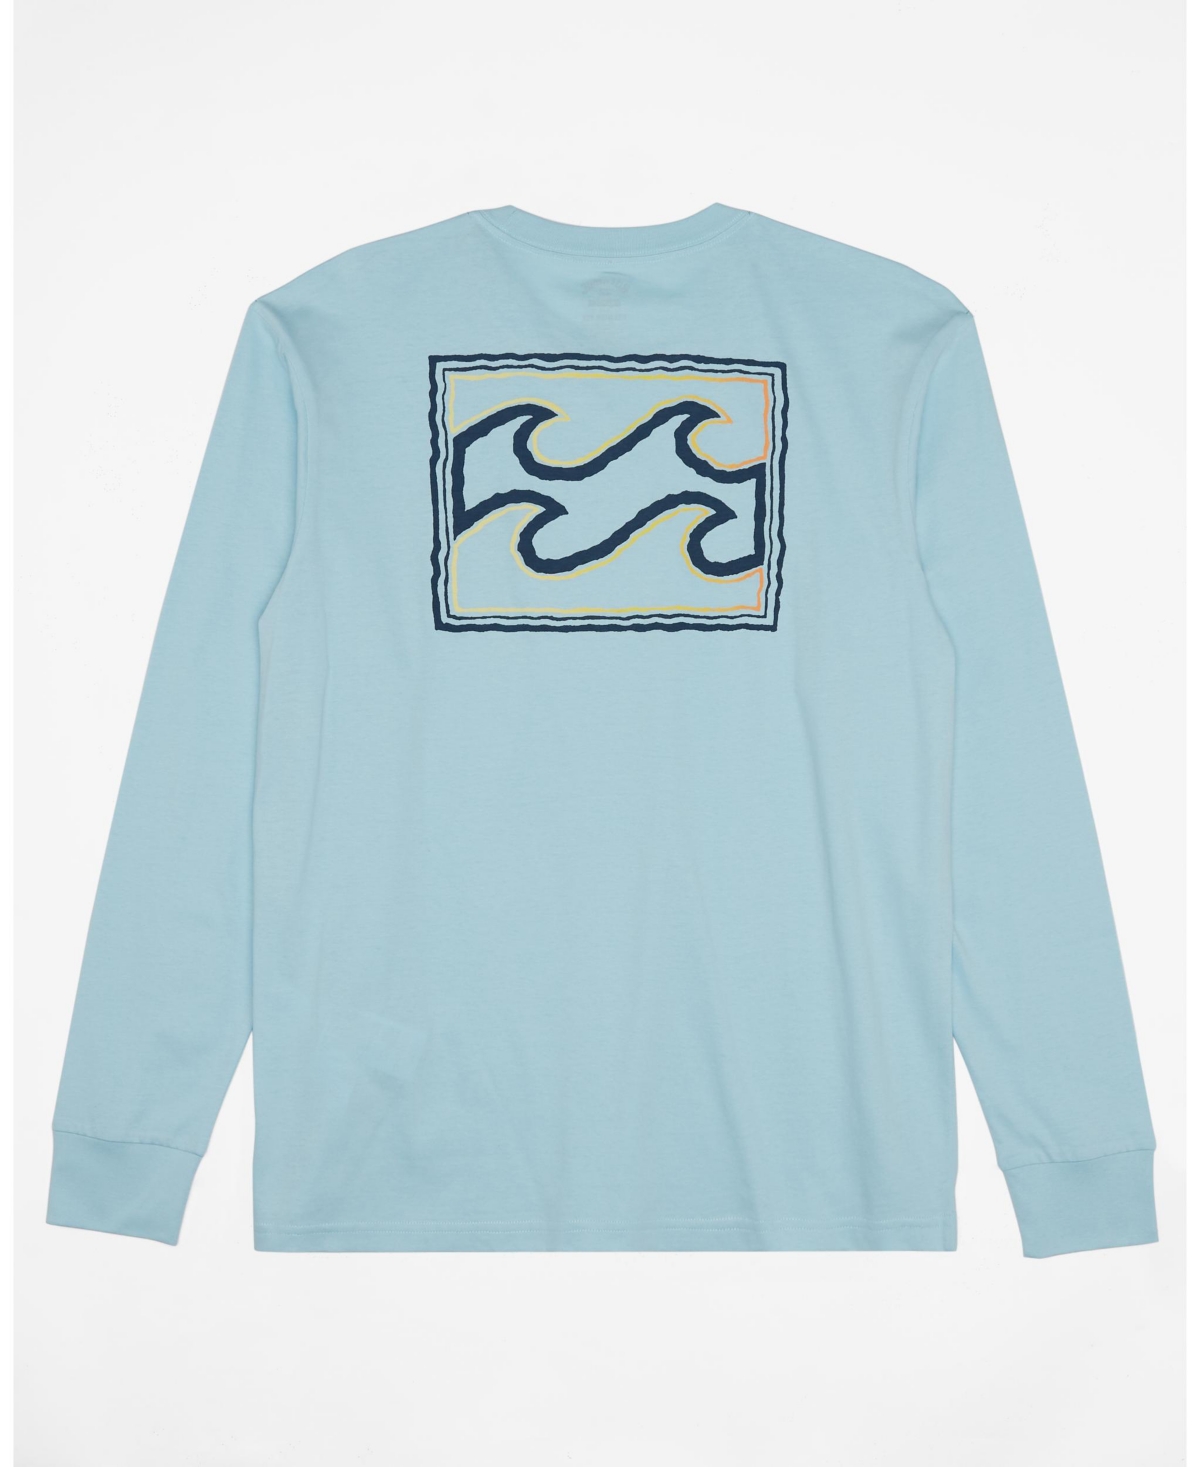 Men's Crayon Wave Long Sleeve T-shirt - Coastal